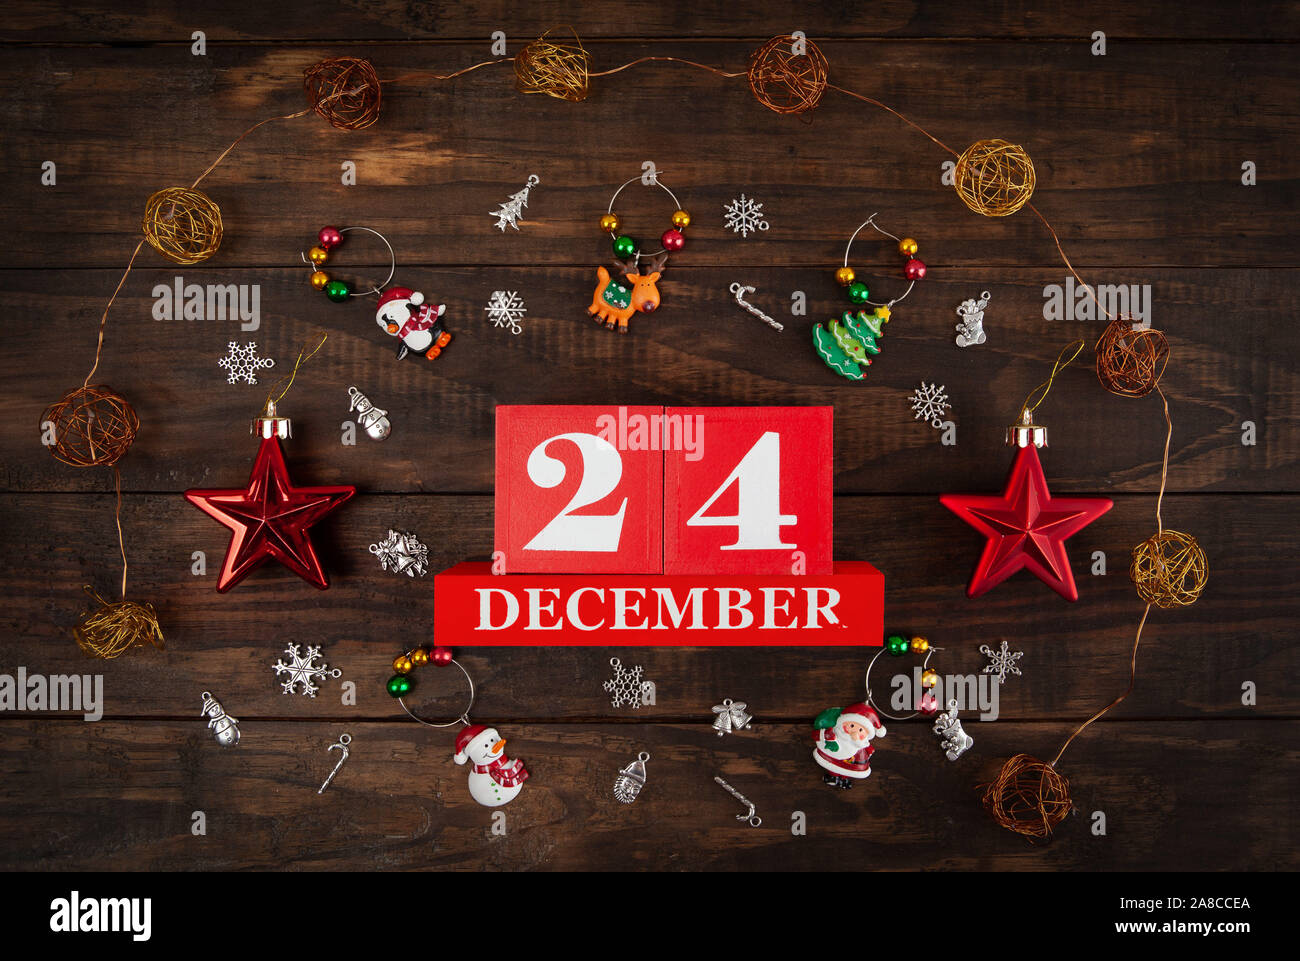 El 24 de diciembre - Nochebuena concepto representado con la fecha y decoraciones de madera dispuestas en contexto Foto de stock